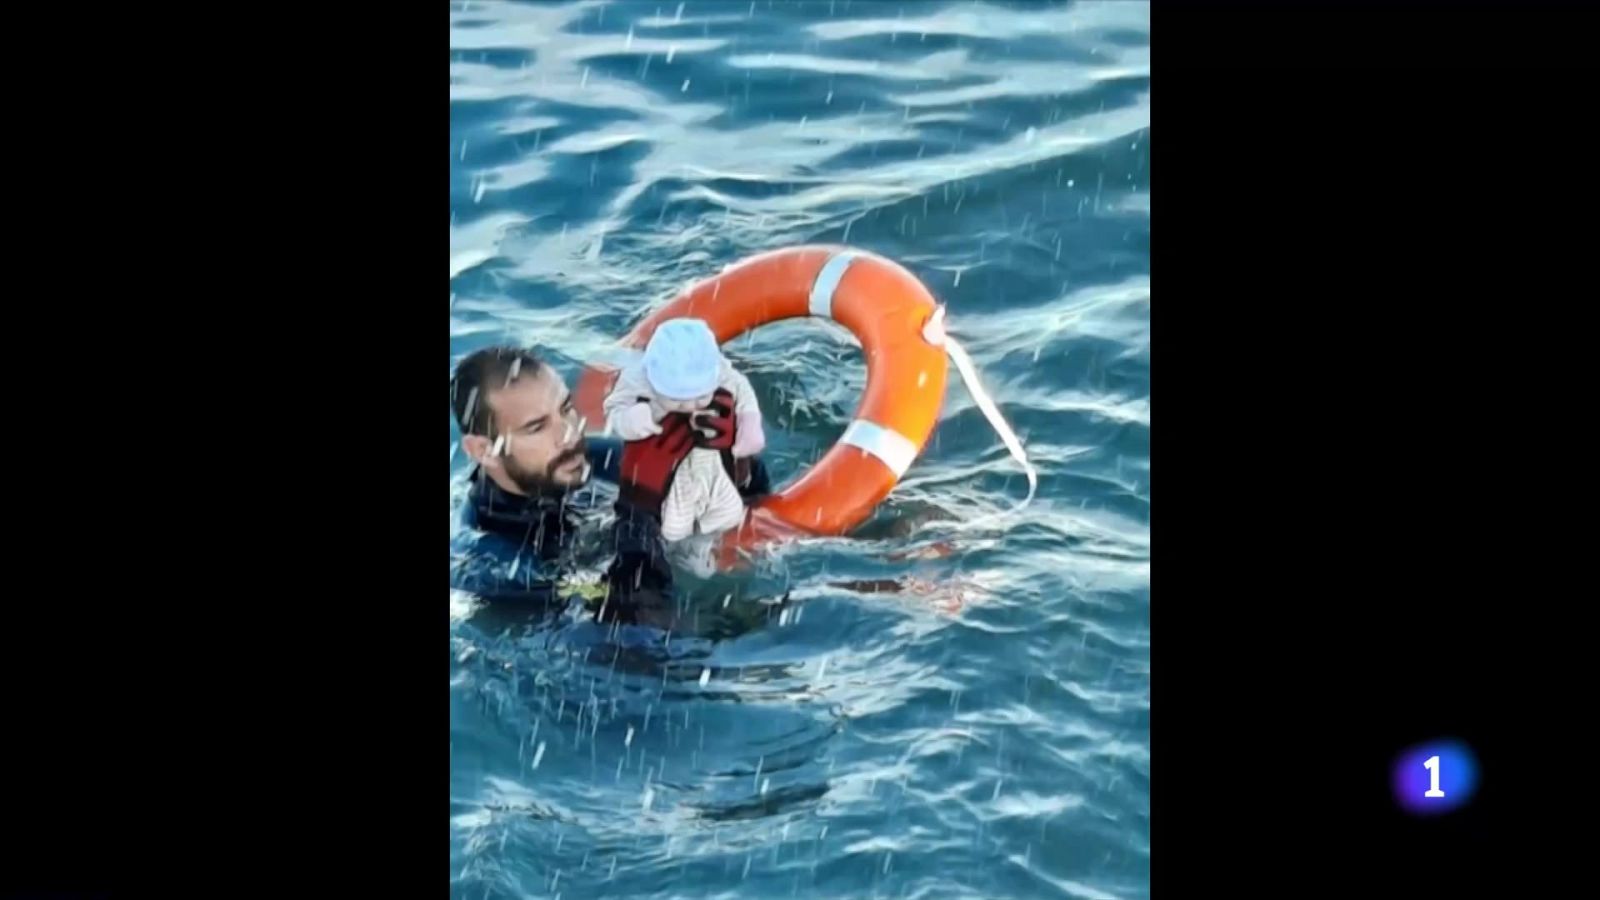 La historia detrás de la foto viral del Guardia Civil salvando a un bebé del mar